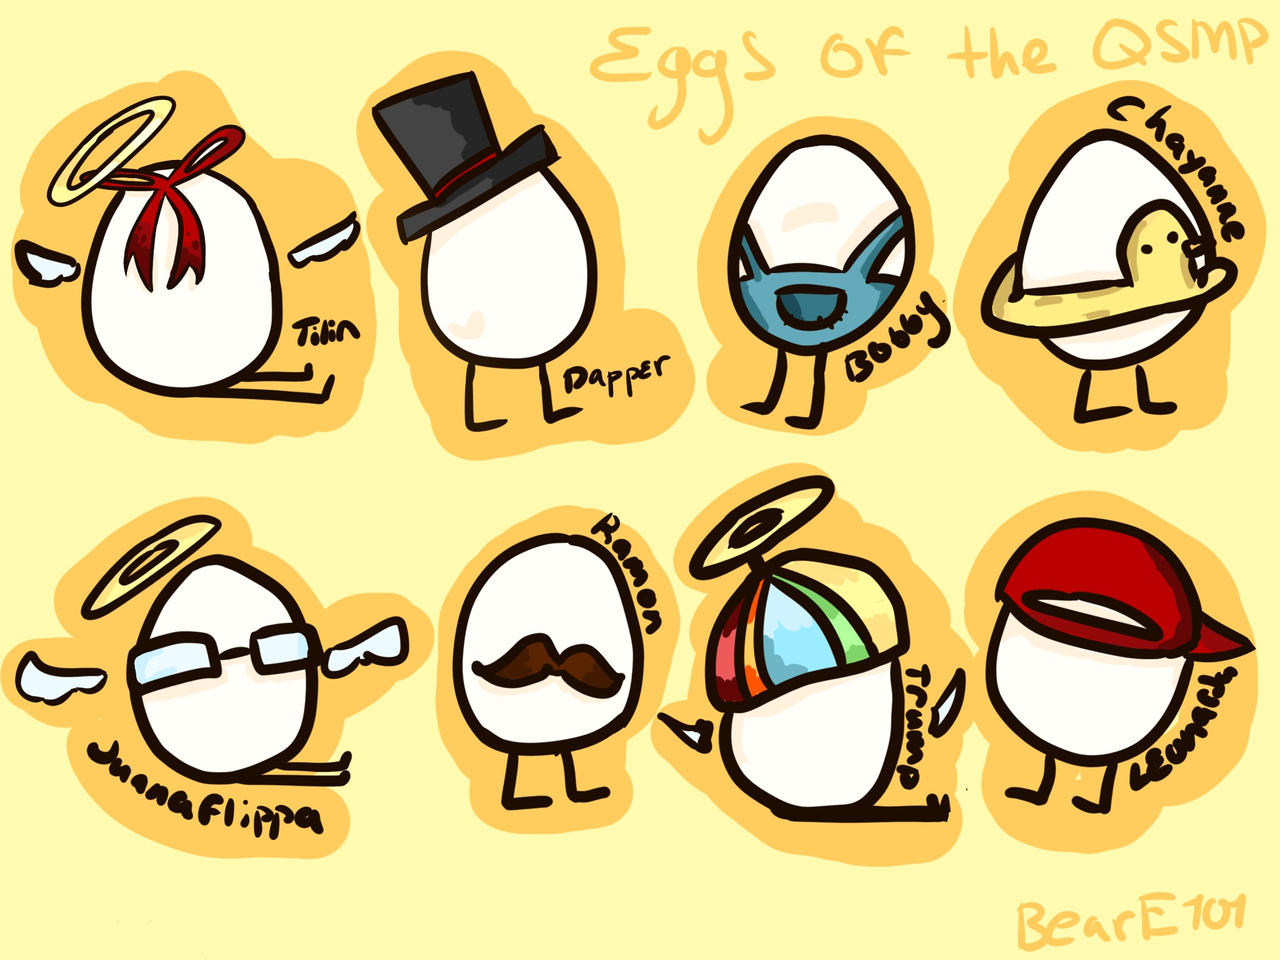 QSMP] Eggs, bby eggs by Parsheliii on DeviantArt